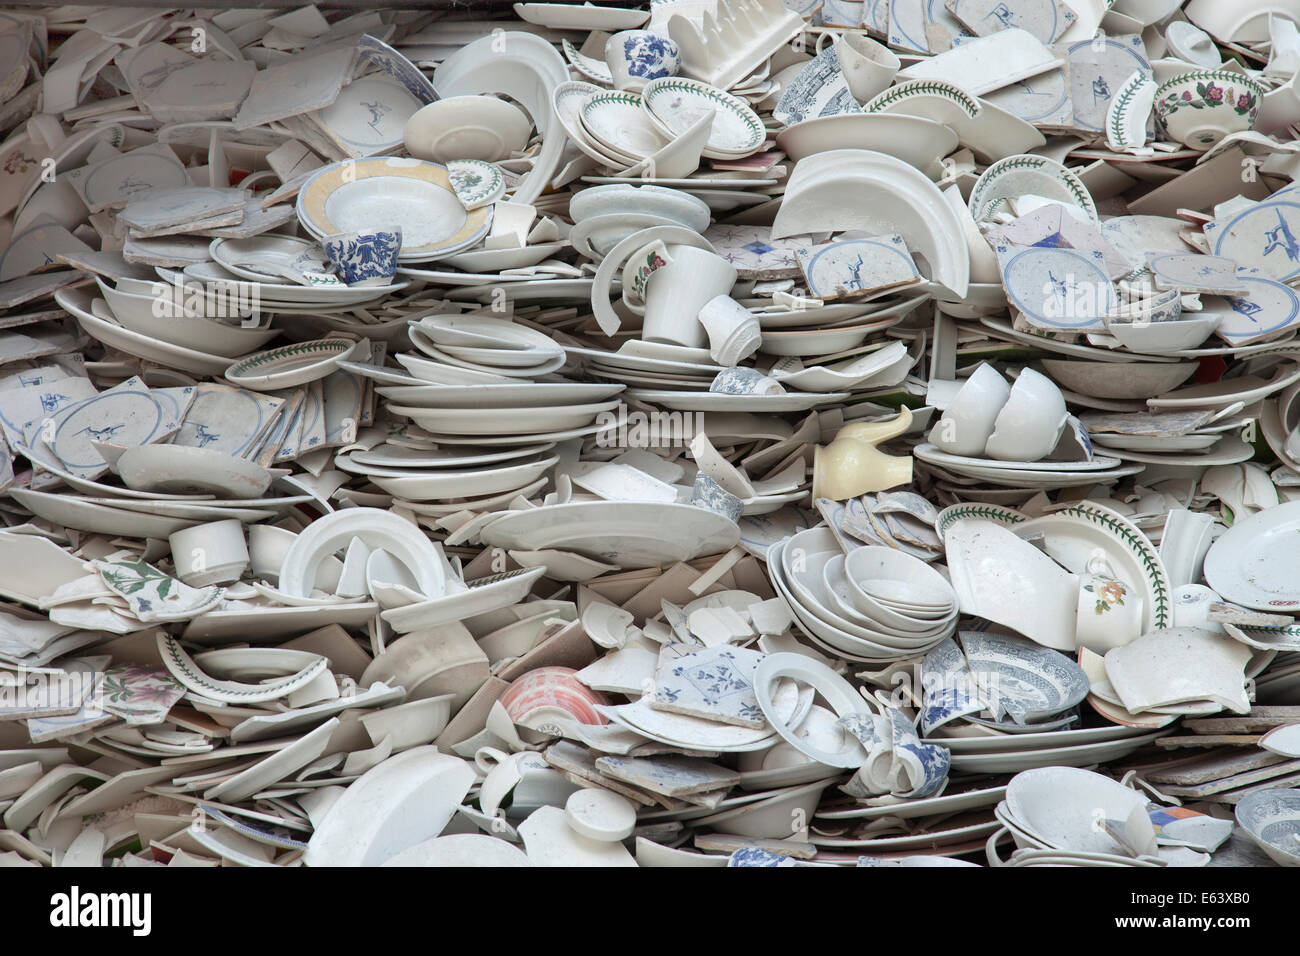 Une pile de vaisselle cassée Photo Stock - Alamy